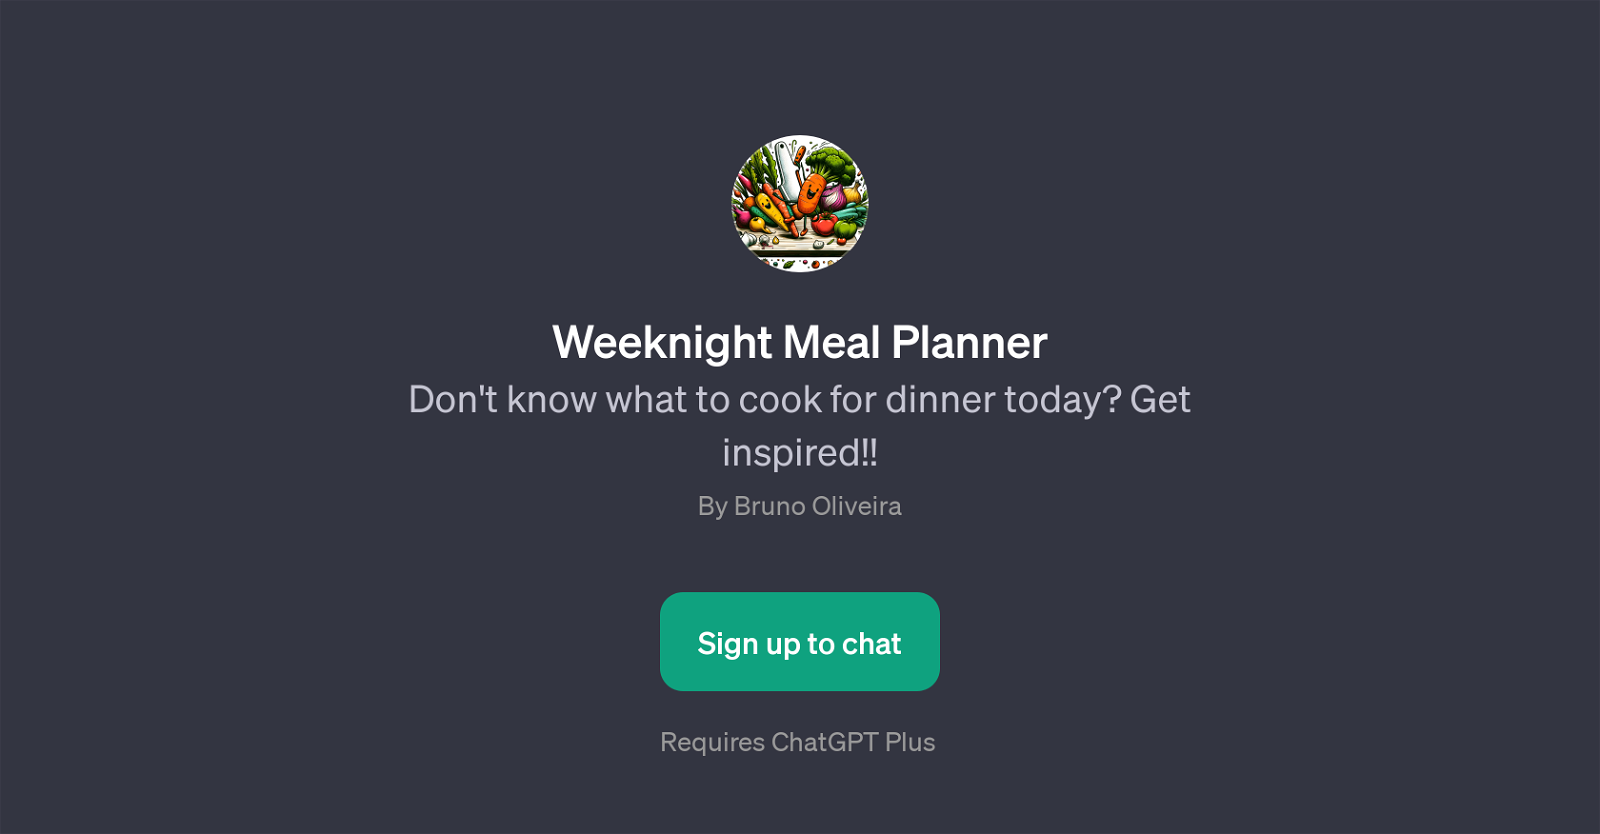 Weeknight Meal Planner website